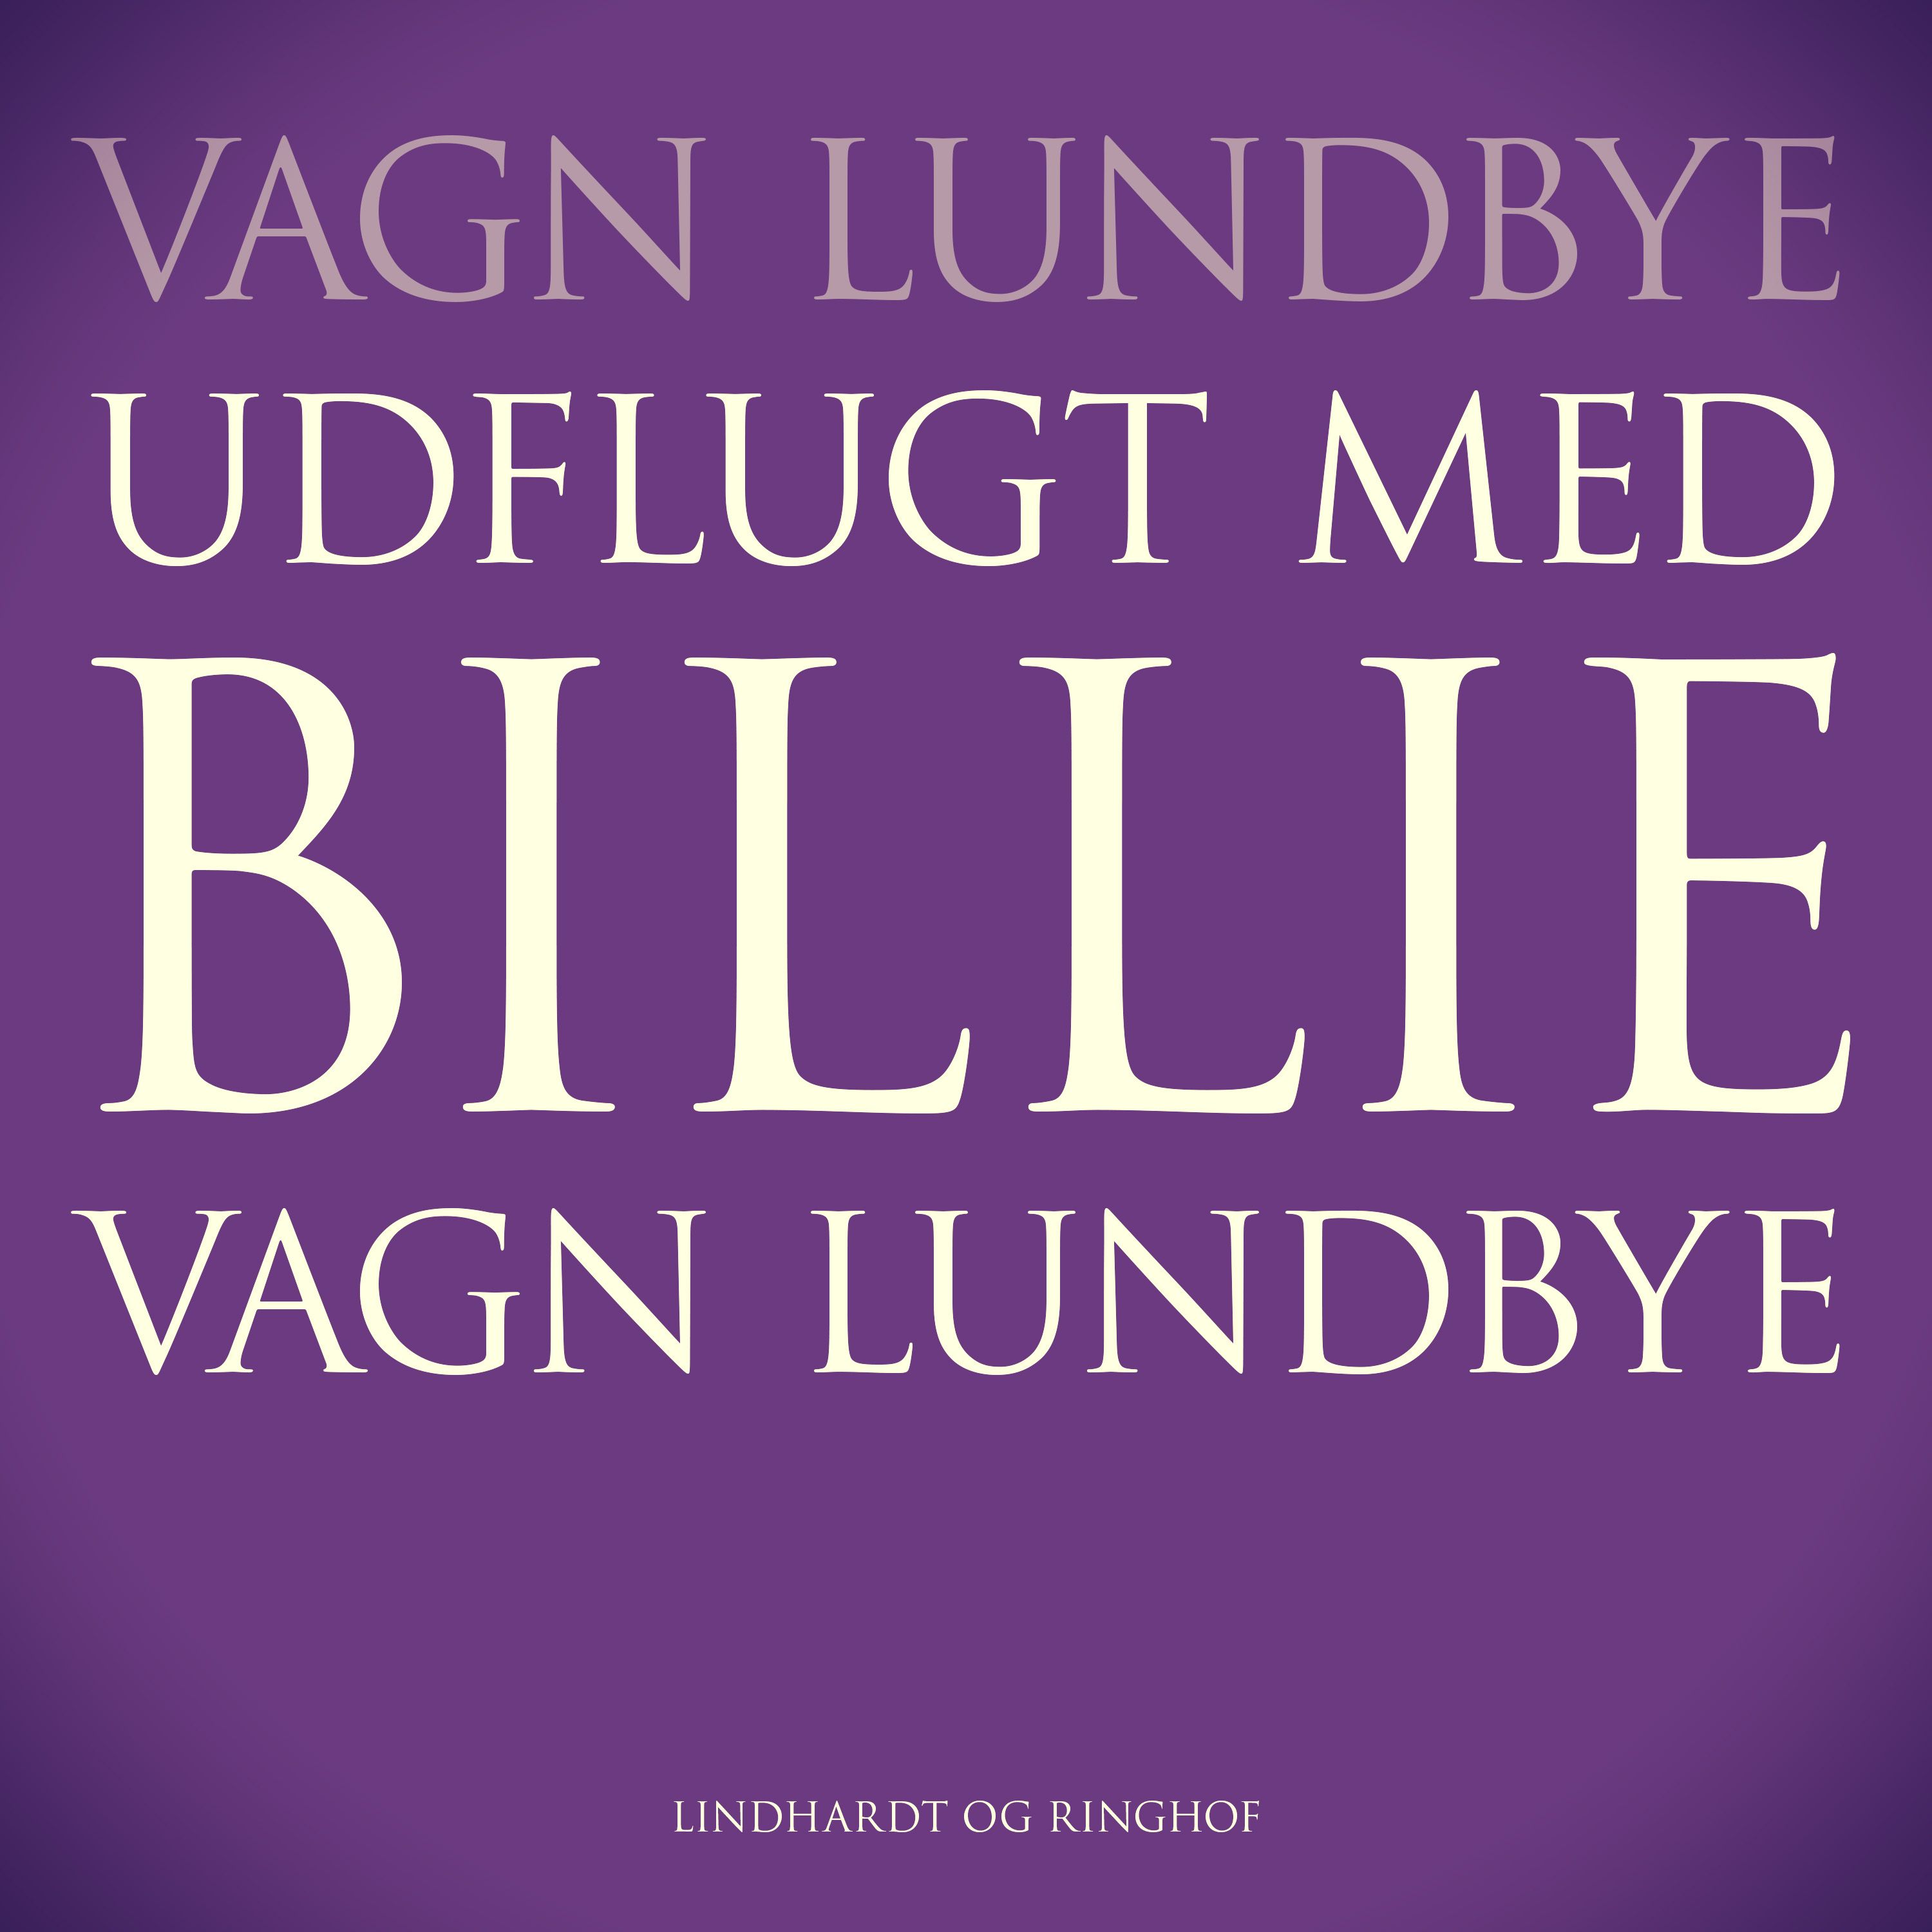 Udflugt med Billie, audiobook by Vagn Lundbye